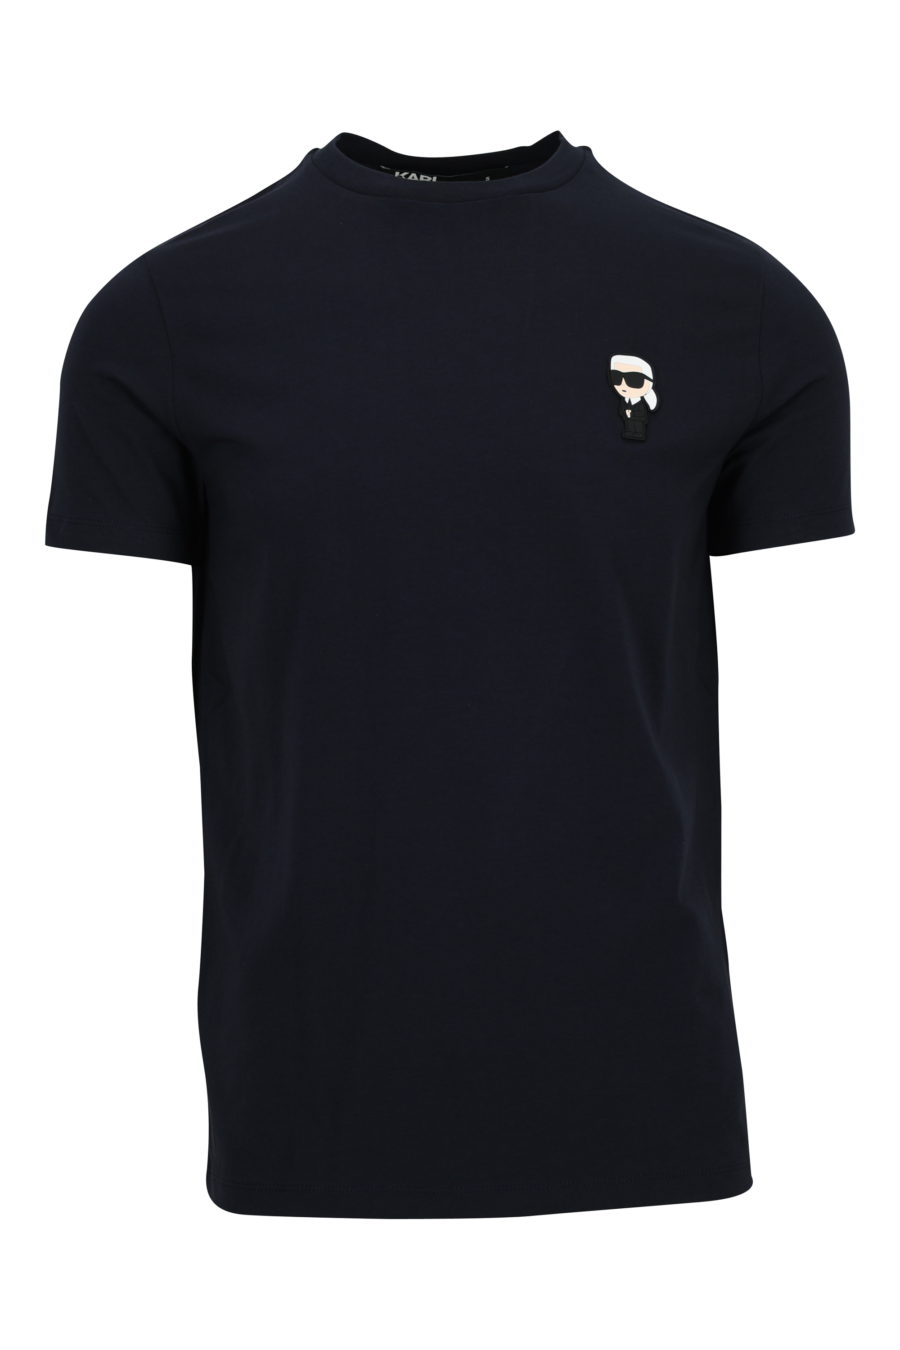 Camiseta azul oscura con logo "ikonik - 4062225535077